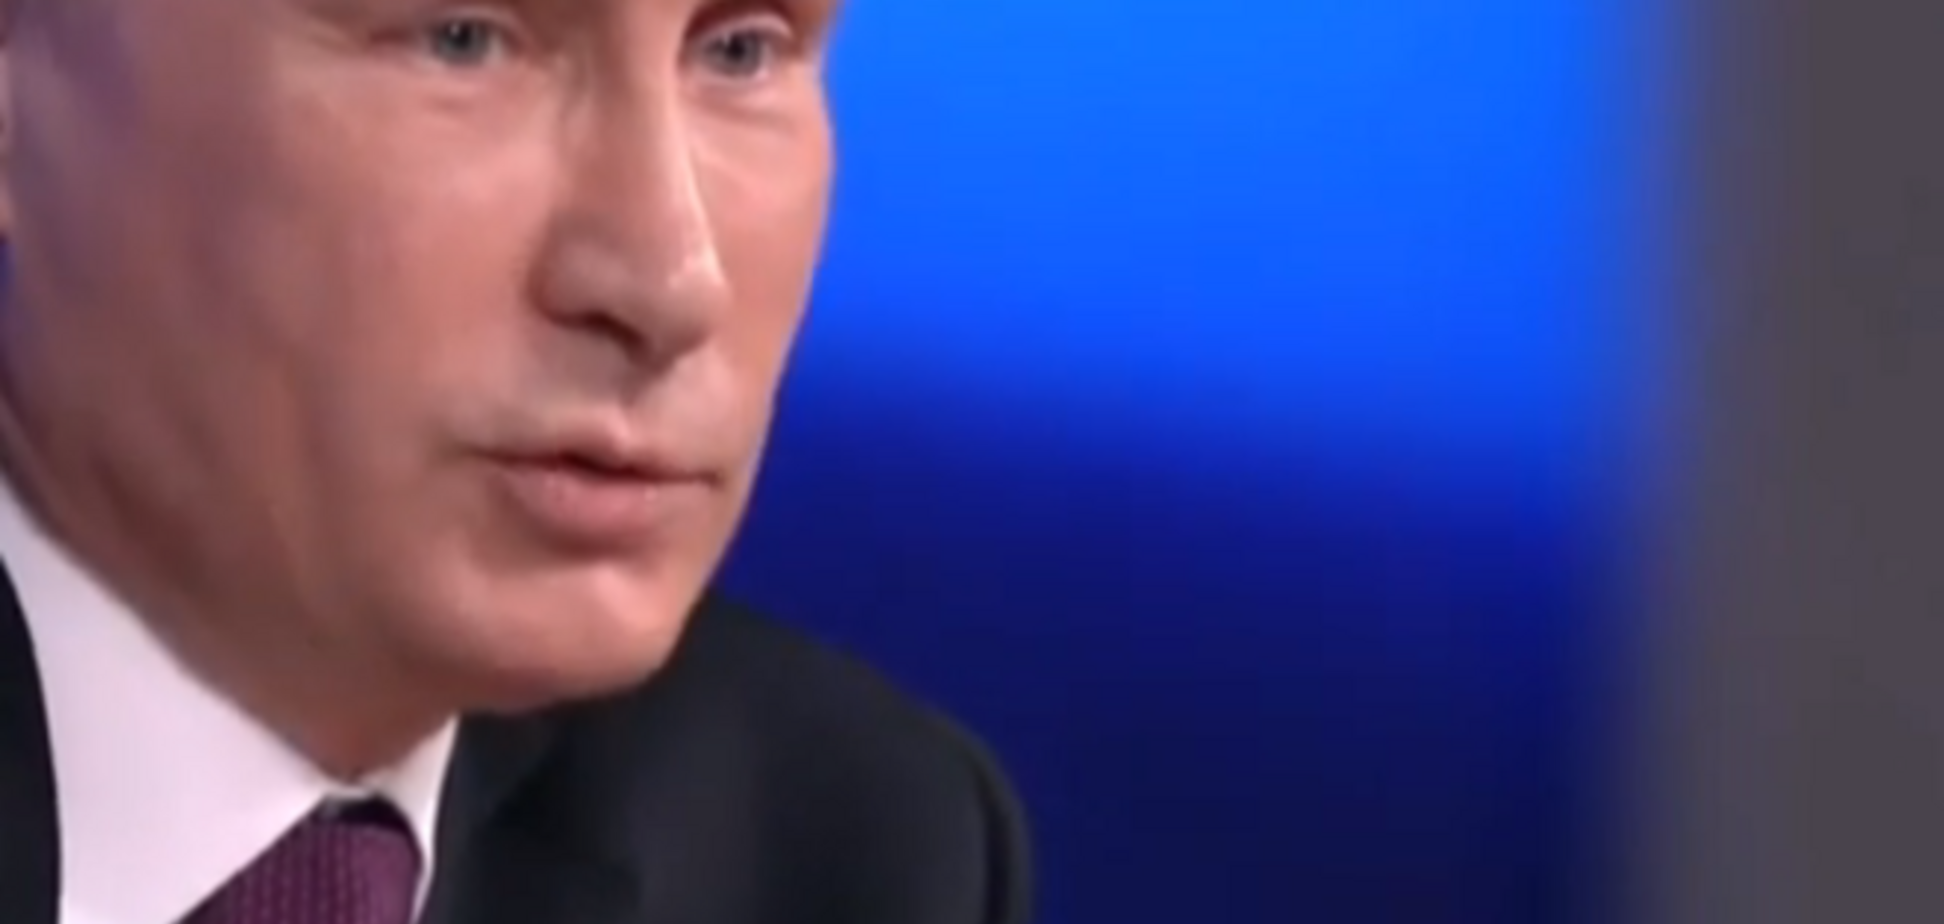 Западные СМИ гадают, с кем 'все хорошо' в личной жизни Путина